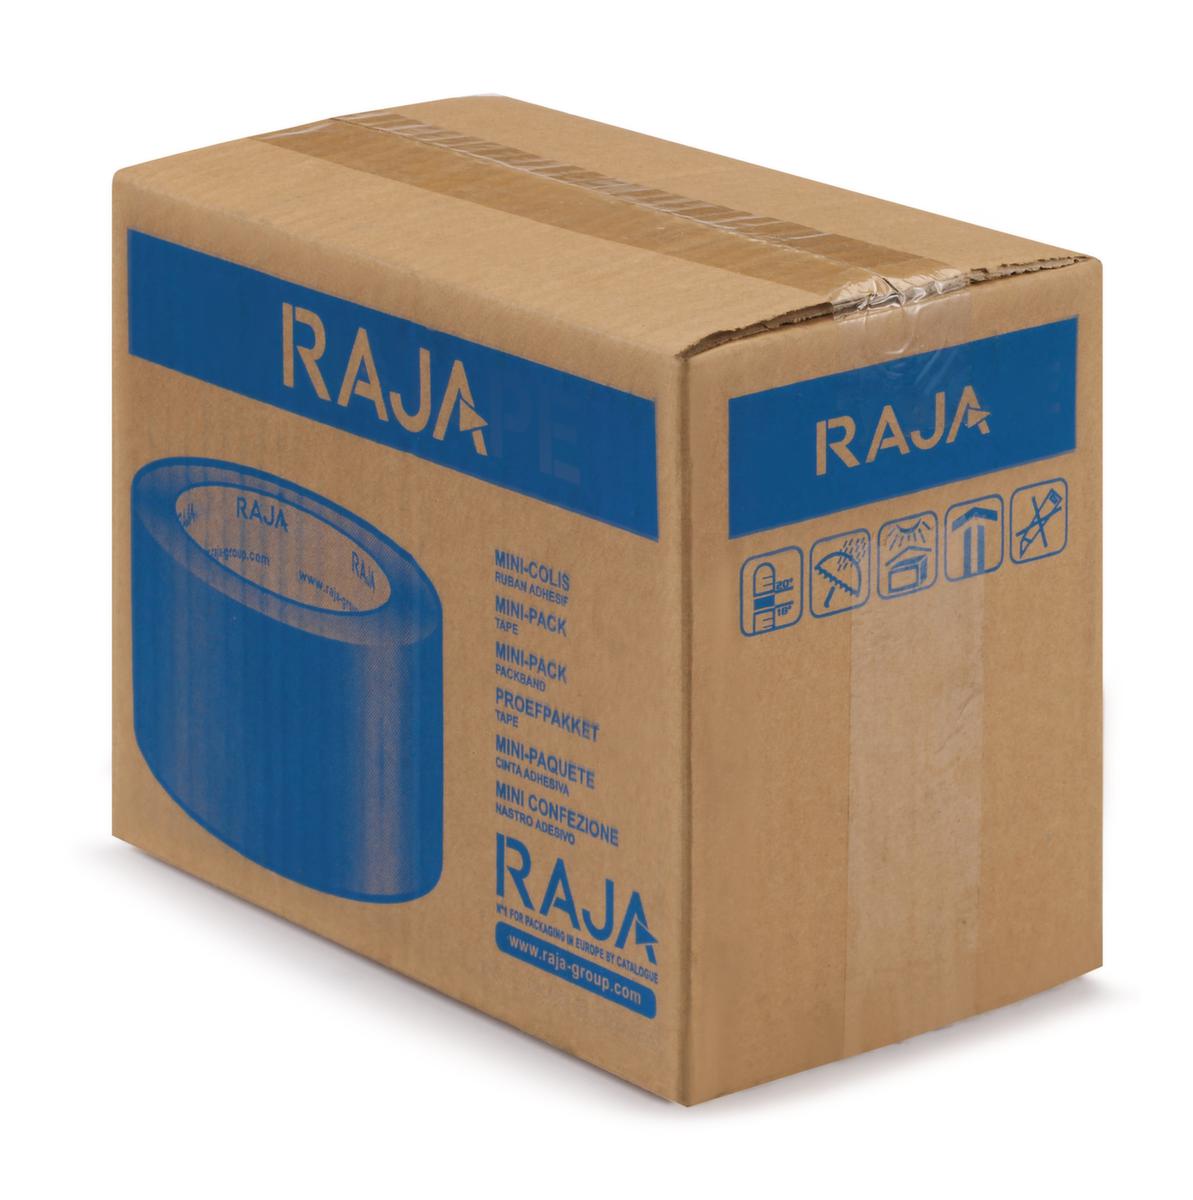 Raja PVC-plakband voor pakketten tot 30 kg  ZOOM